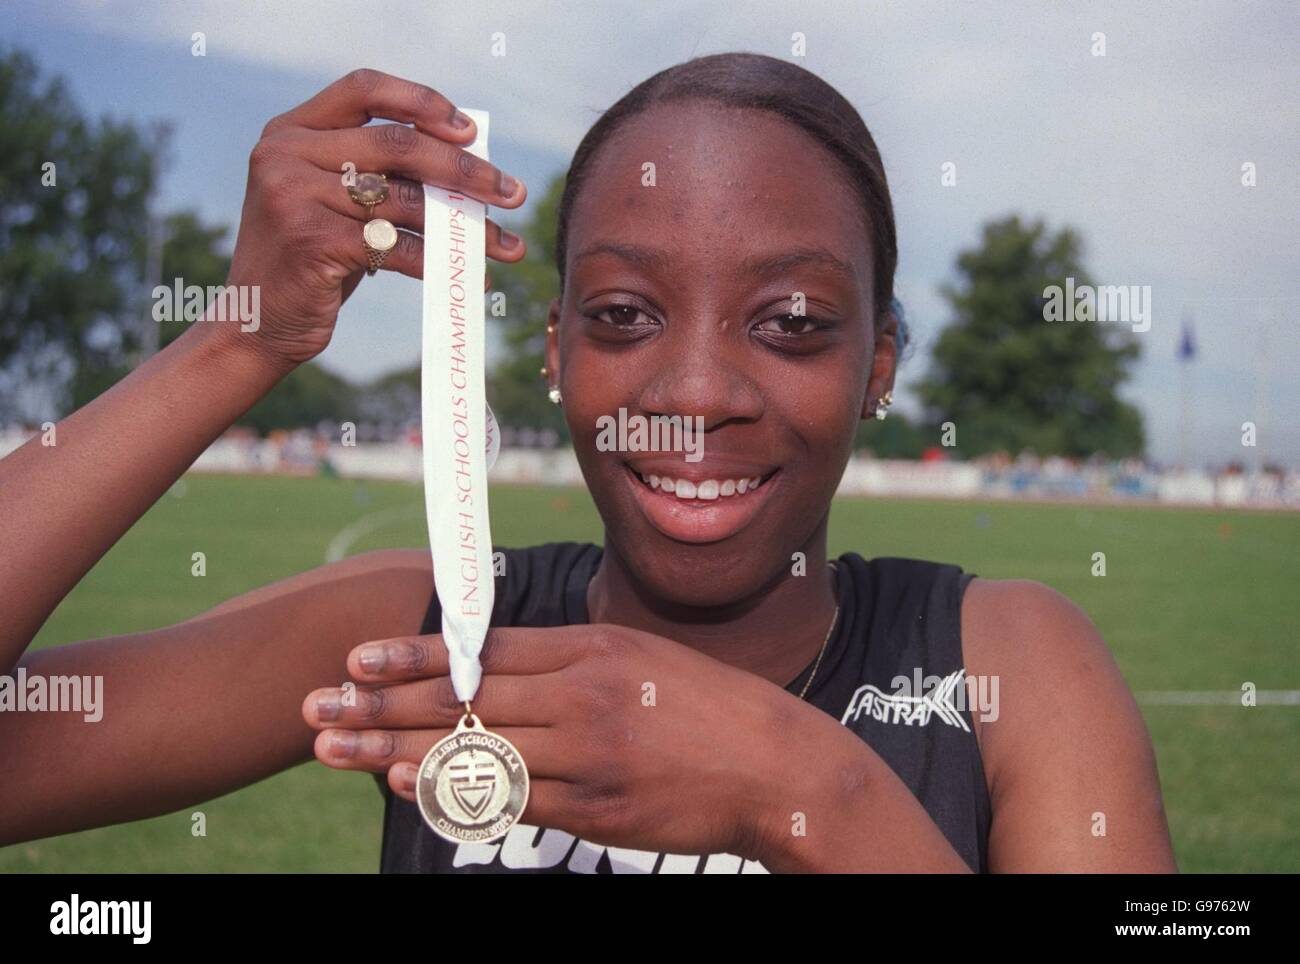 Athlétisme - Championnat des écoles anglaises - Bury St Edmunds.Vernicha James, 15 ans, de Lewisham, Londres, avec sa médaille d'or pour le 200m des intermédiaires Banque D'Images